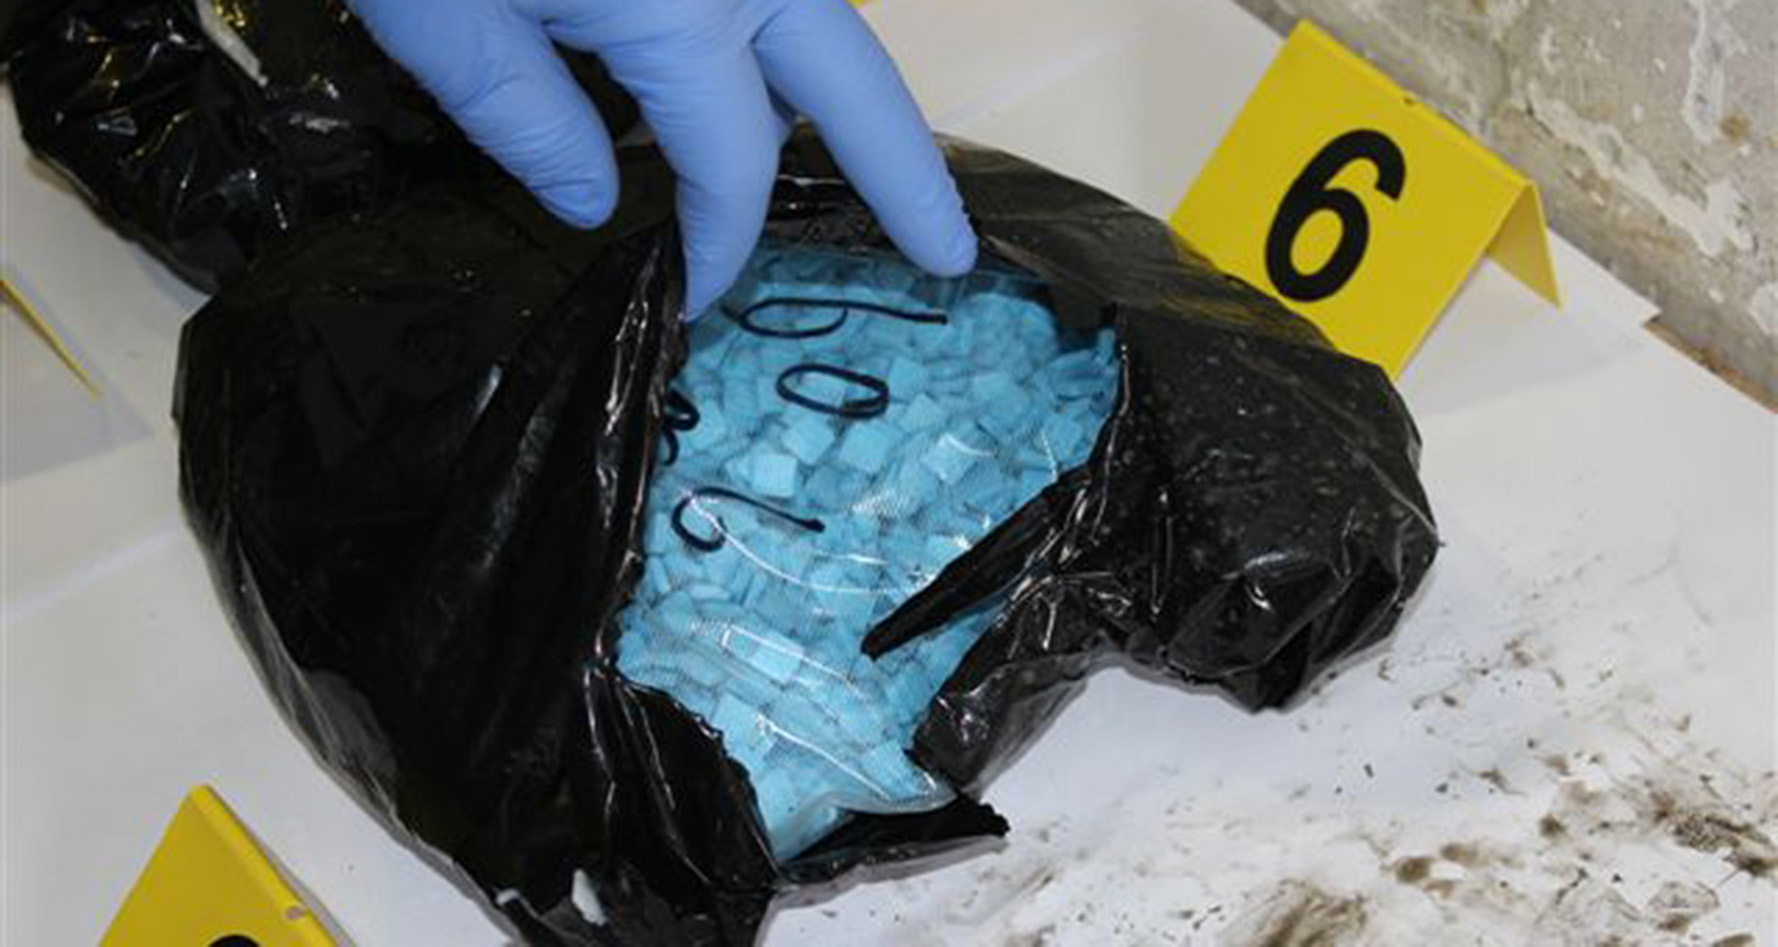 Полицијa на ГП Хоргош запленила 4,6 килограма кокаина и скоро осам килограма екстазија и спида